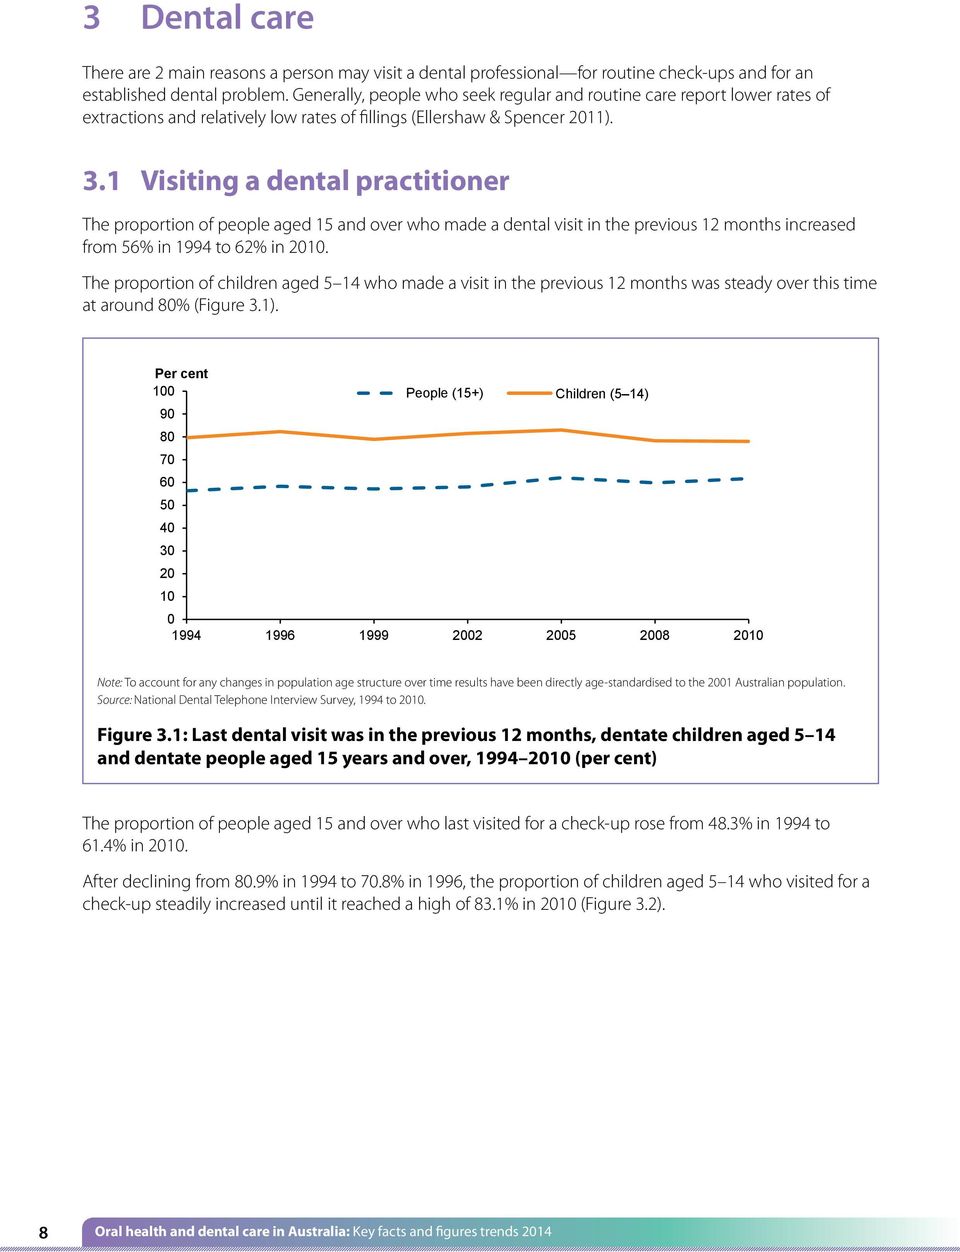 established low rates dental of fillings problem. (Ellershaw Generally, & Spencer people 2011).